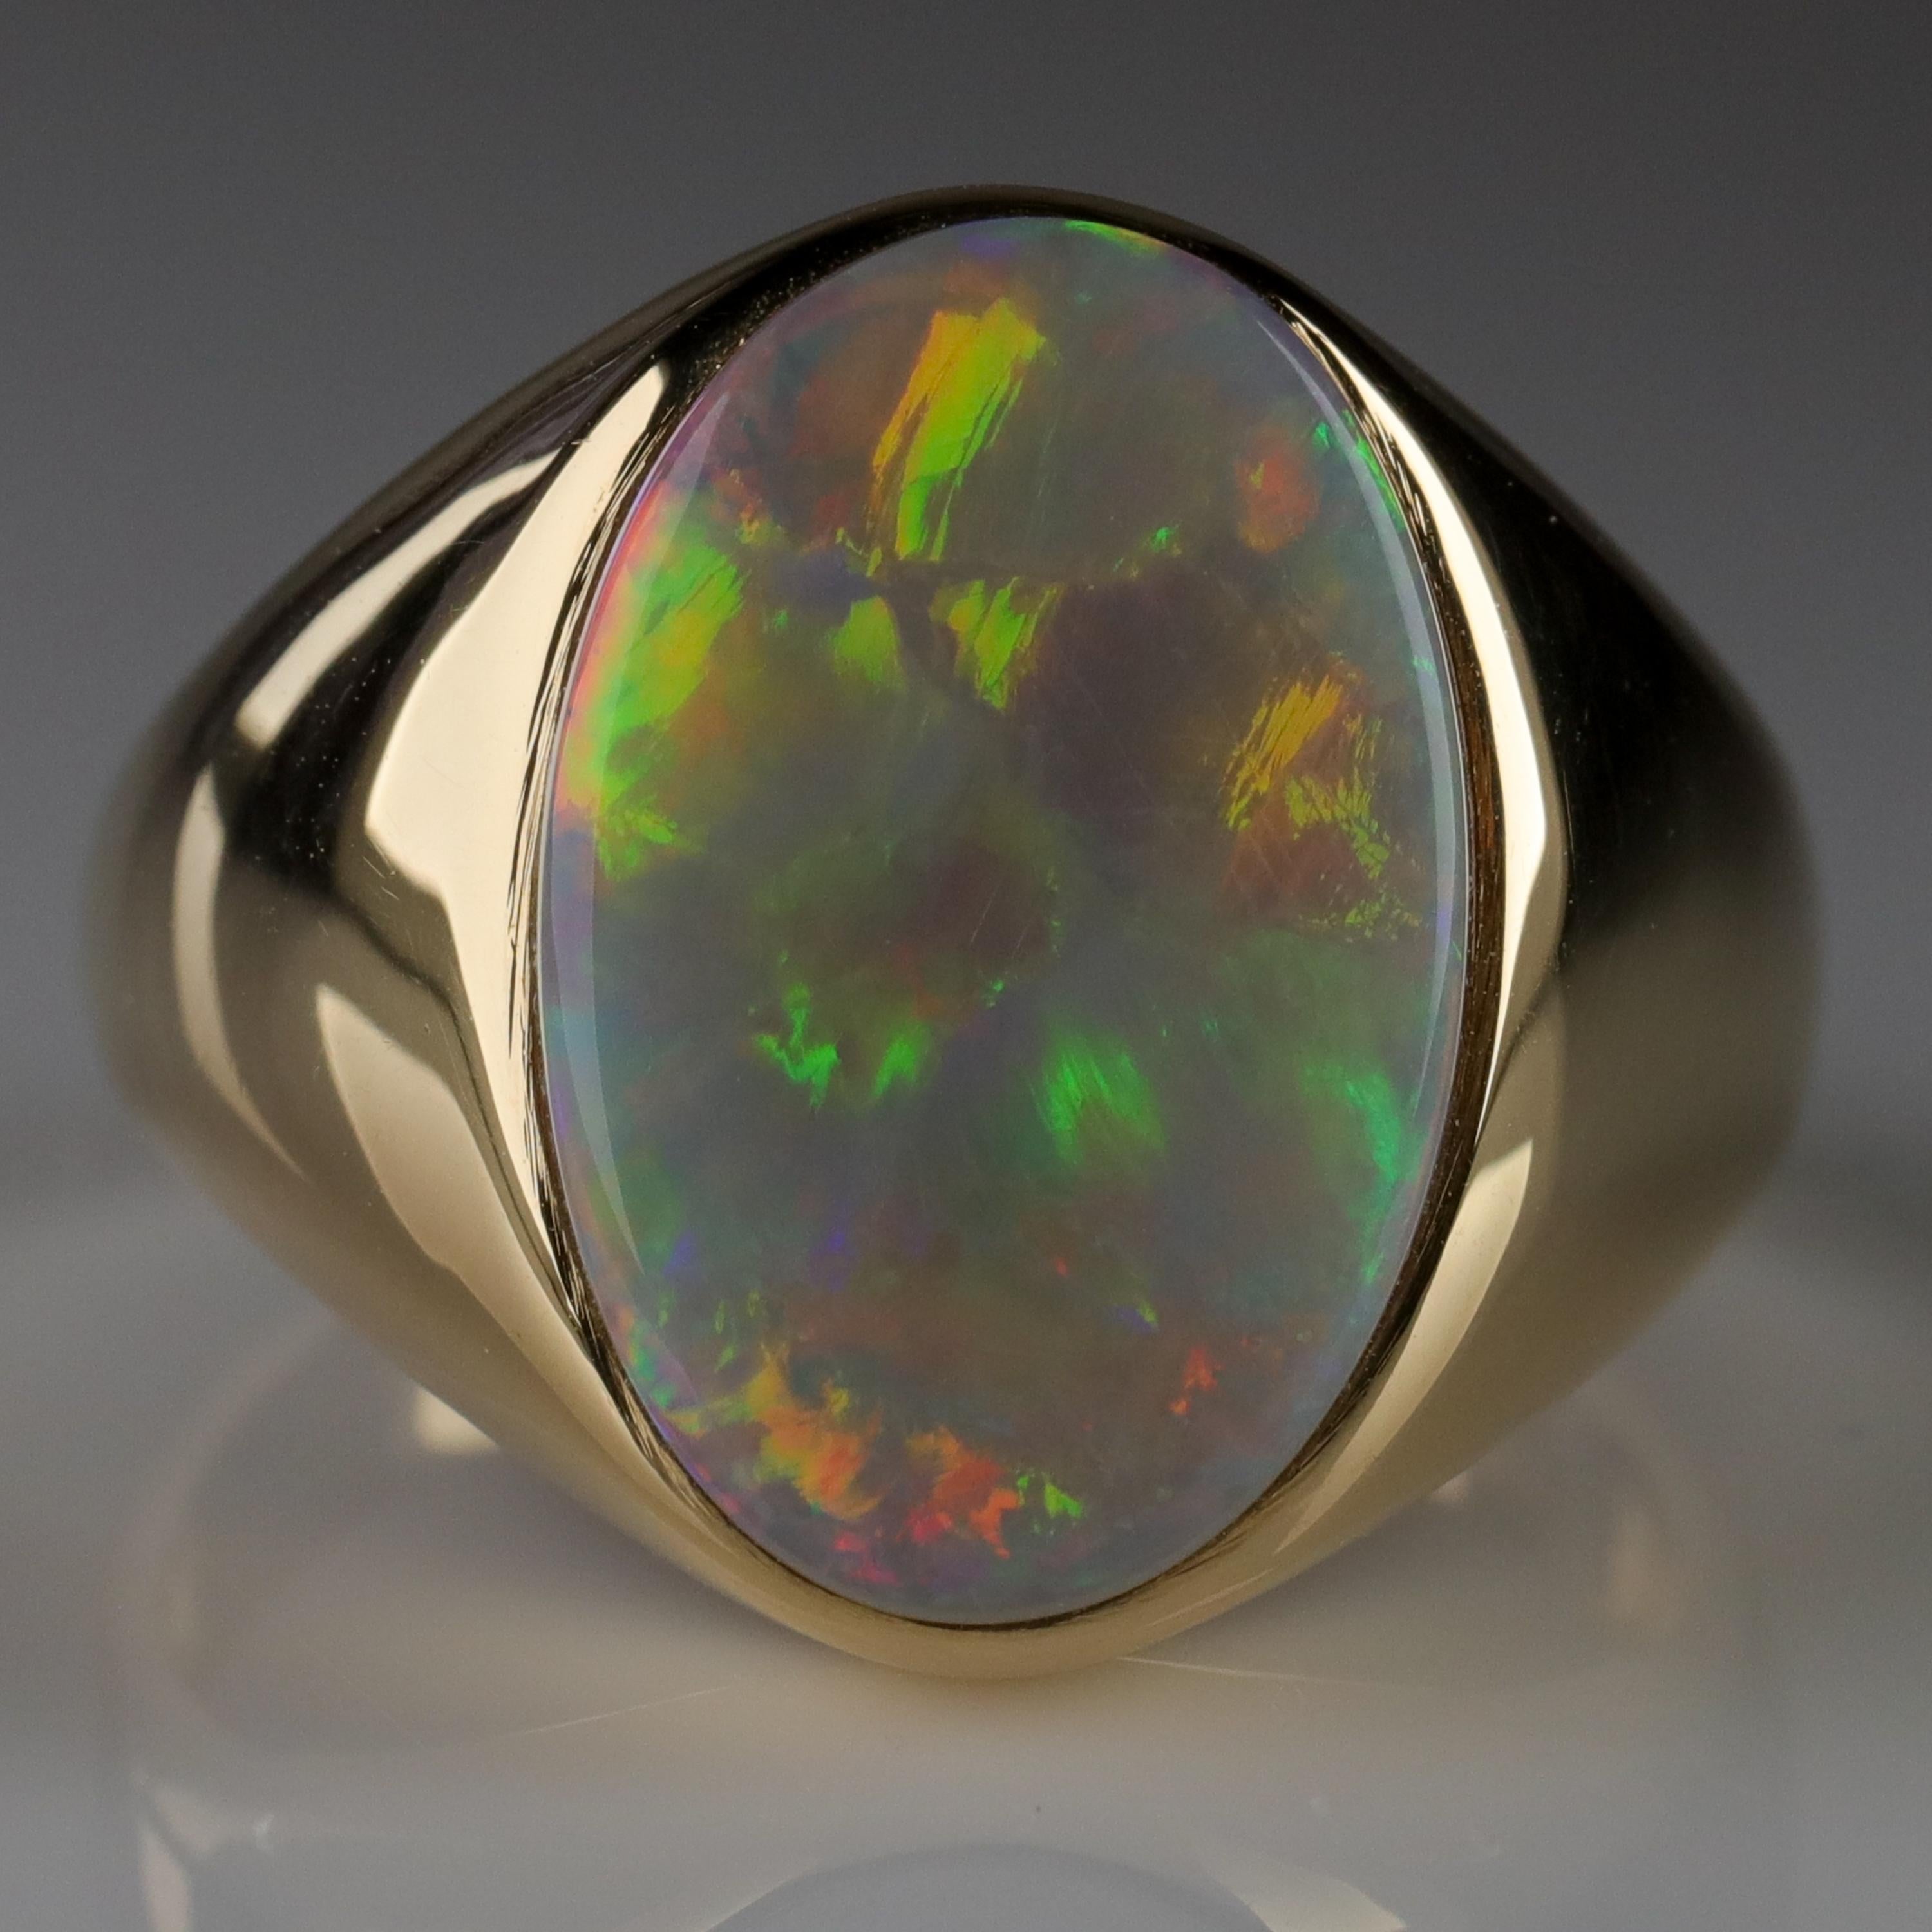 Men's Australian White Opal Ring with Full Spectrum Broad Flash 2